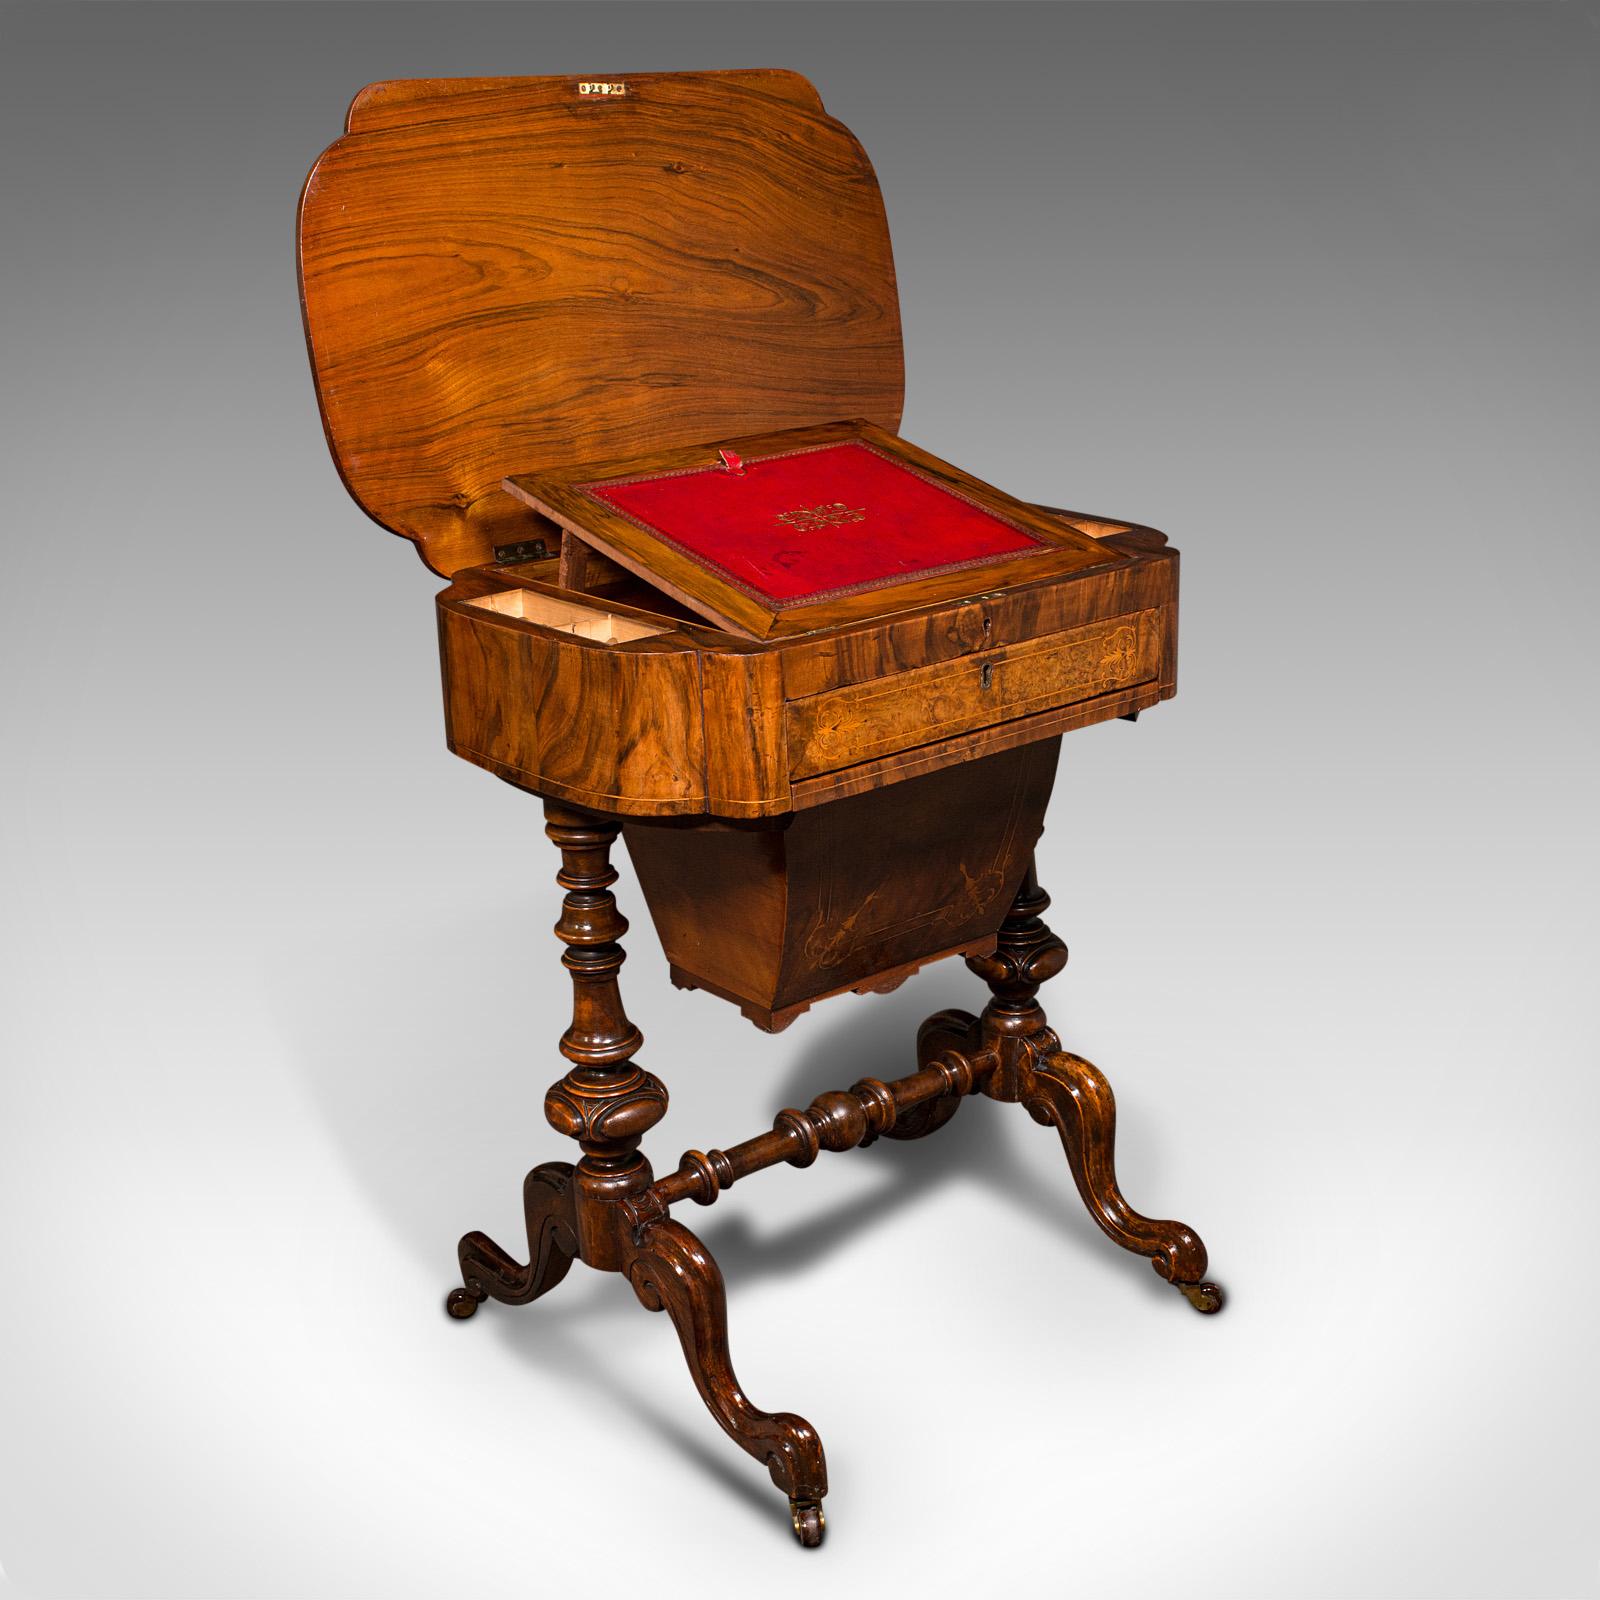 Dies ist ein antiker Arbeitstisch für die Dame des Hauses. Ein englischer Schreib- oder Nähtisch aus Wurzelholz und Leder von Waring & Gillow aus der späten viktorianischen Zeit, um 1900.

Wunderschön gestalteter Tisch mit auffälligen Figuren und